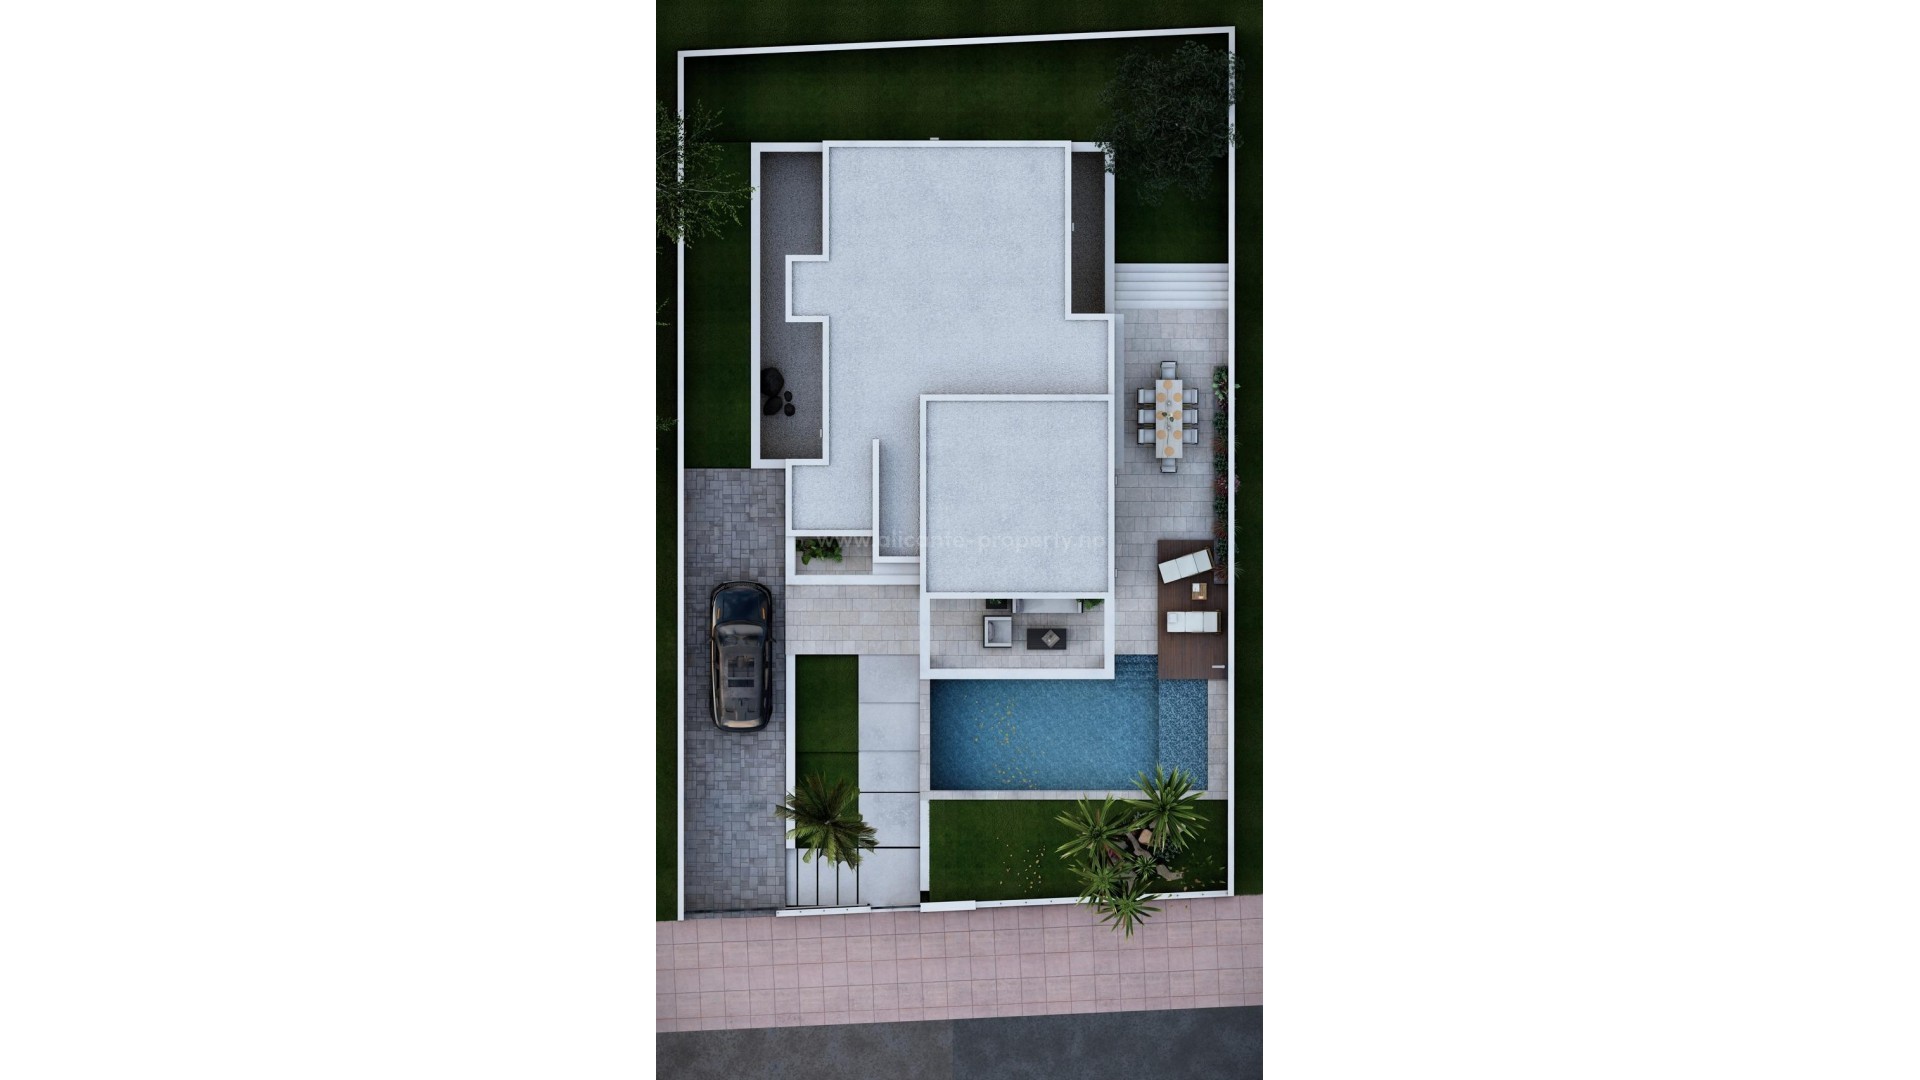 Nybygget moderne villa i Dona Pepa, Rojales, 3 soverom, 2 bad, privat hage med basseng, terrasse, kjeller og parkeringsplass